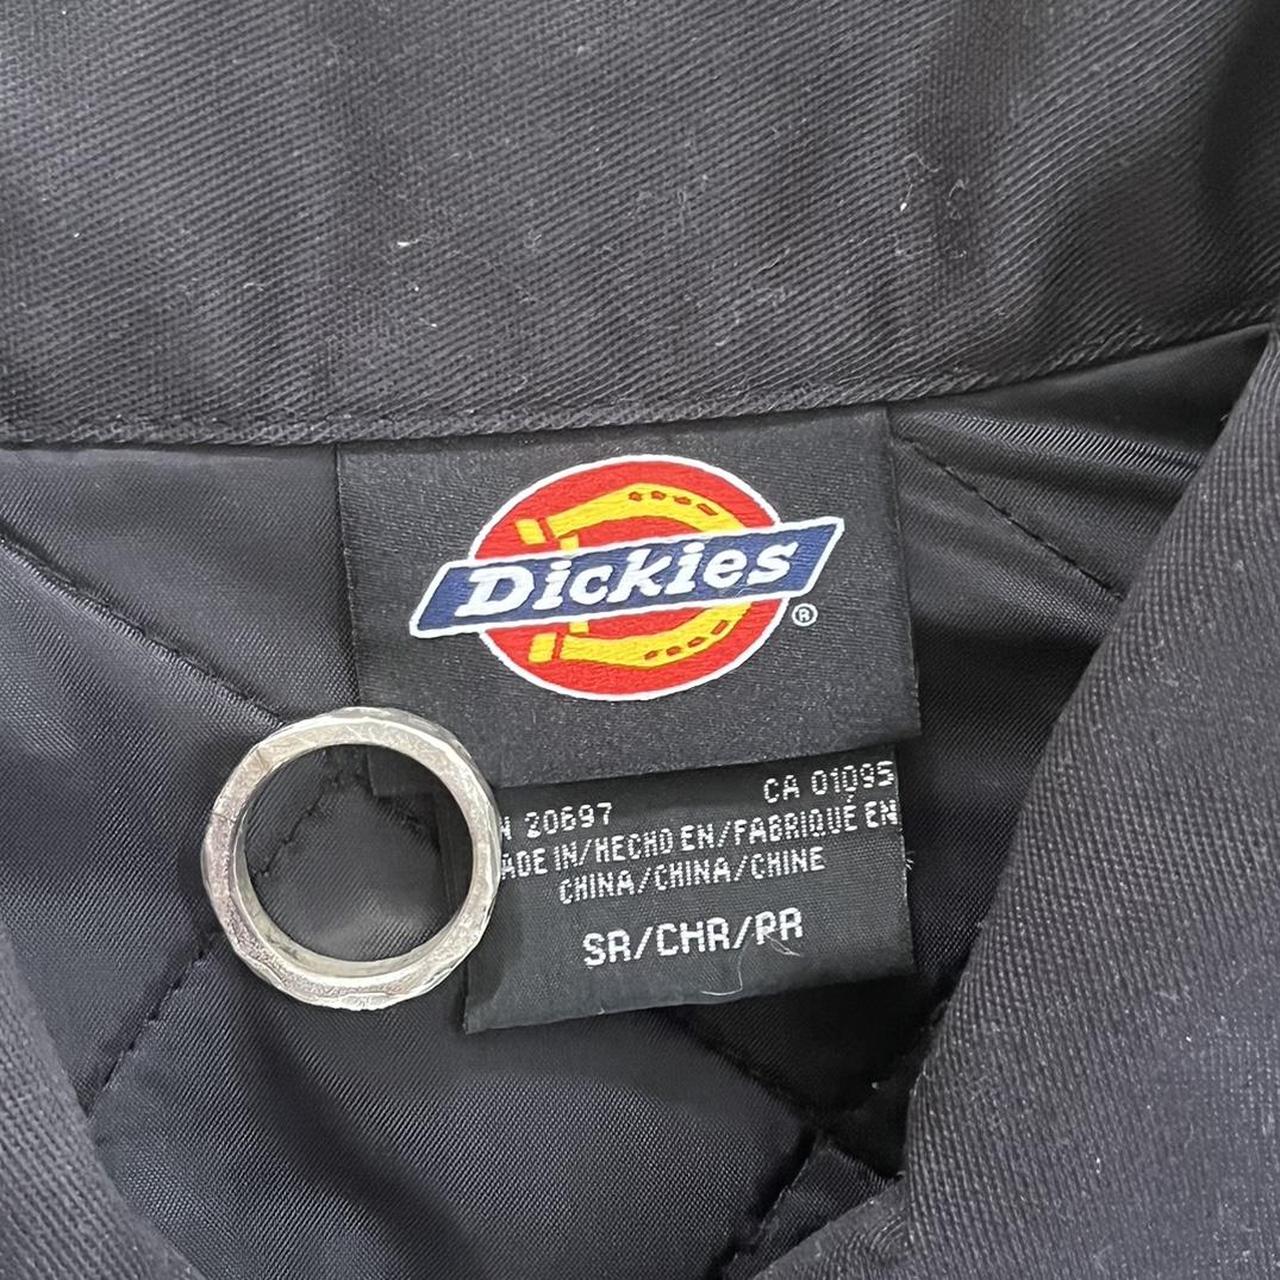 Men’s Dickies eisenhower work jacket in black Has... - Depop